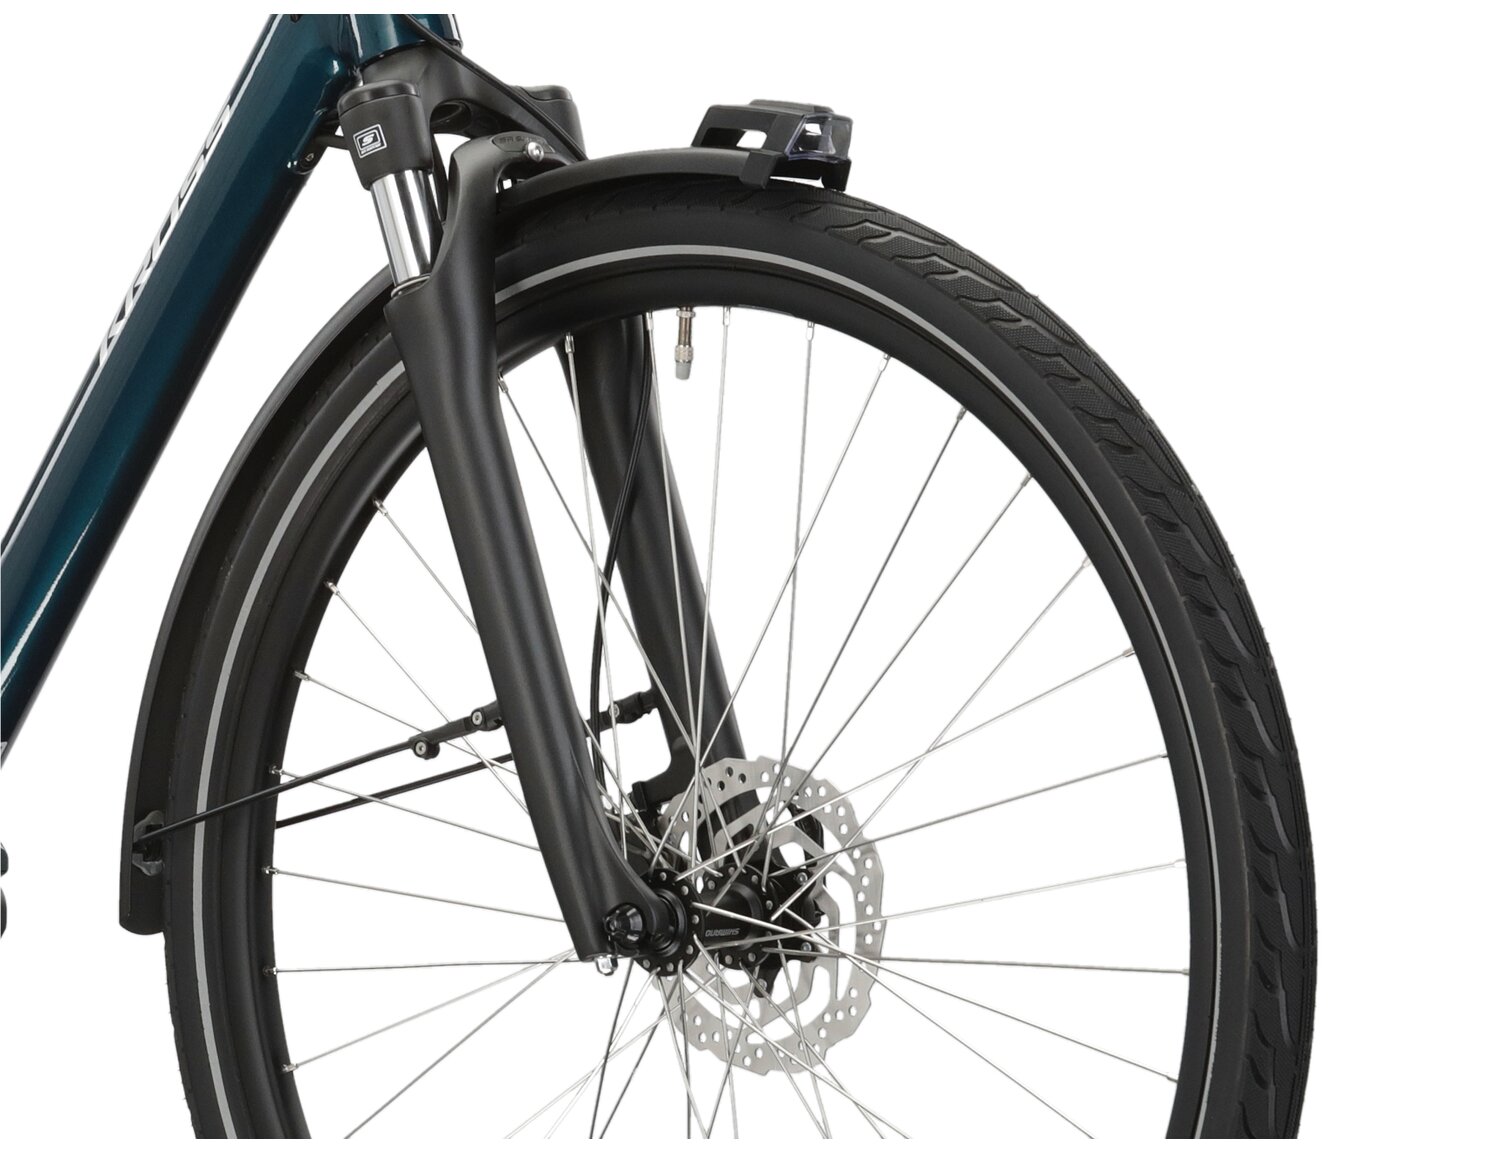 Aluminowa rama, amortyzowany widelec SR SUNTOUR NEX E25 o skoku 50mm oraz opony w elektrycznym rowerze miejskim Ebike City KROSS Sentio Hybrid 5.0 504 Wh 